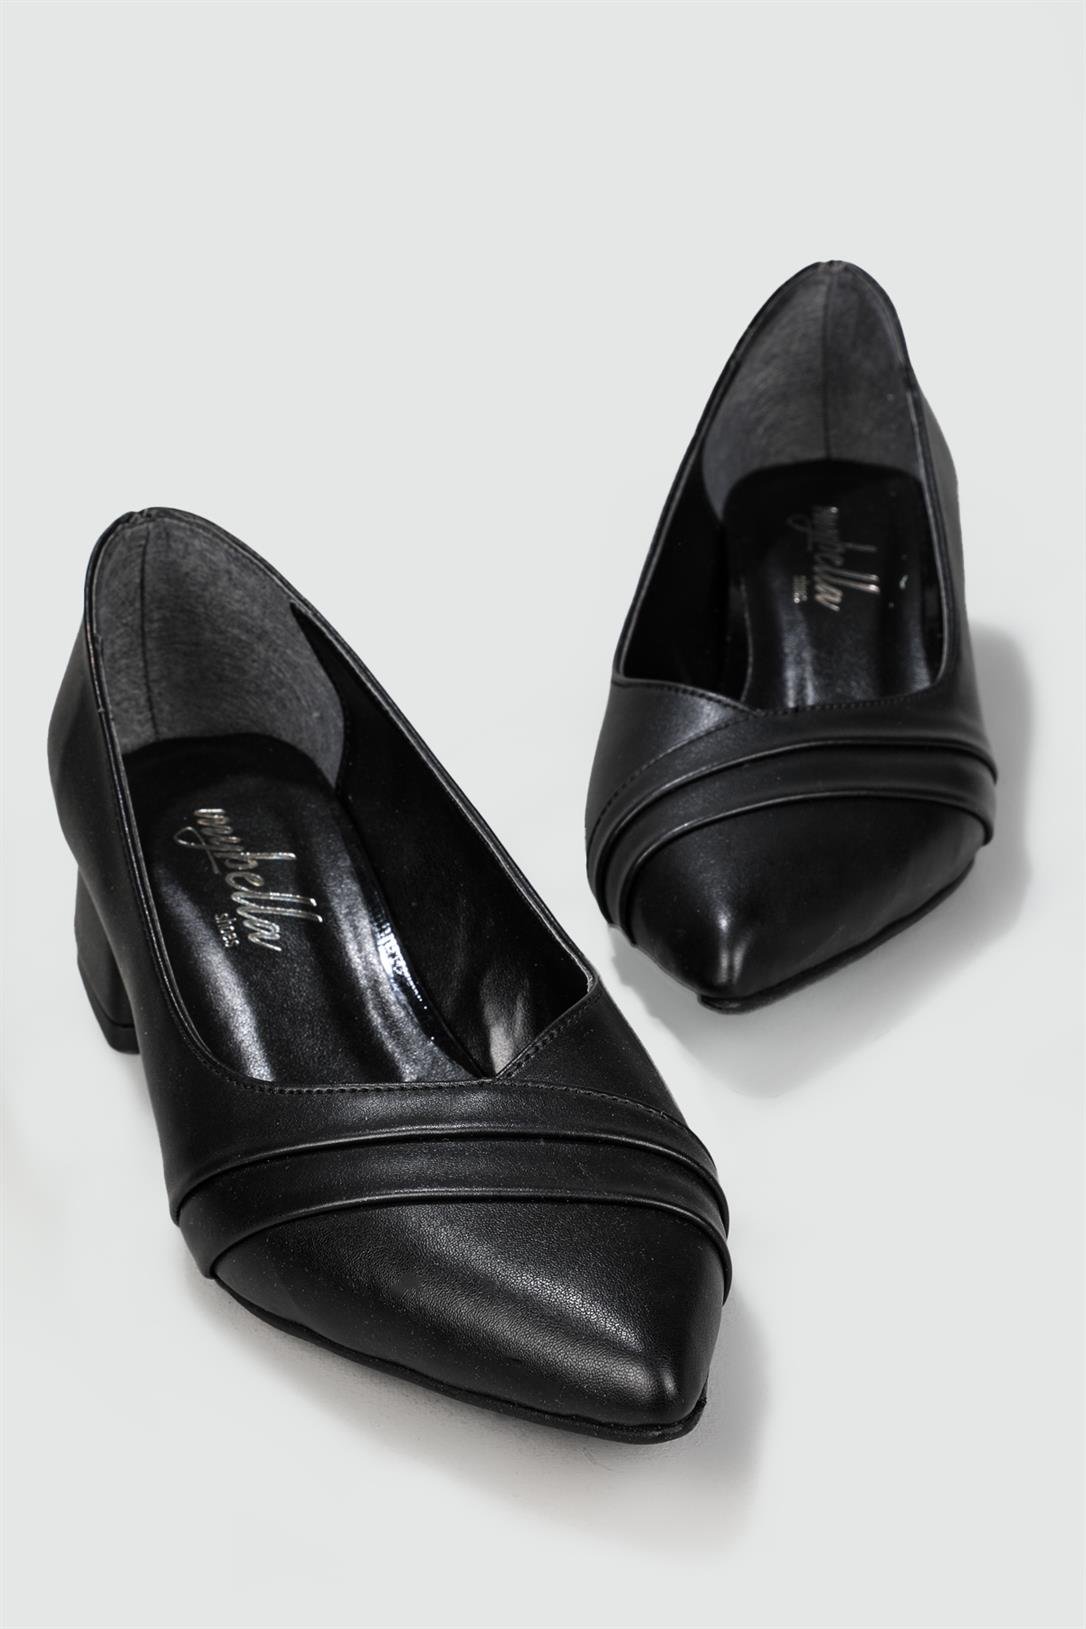 Serap Sivri Burun 3 cm Topuklu Stiletto Siyah Kadın Ayakkabı 27 | Ayakkabı  City